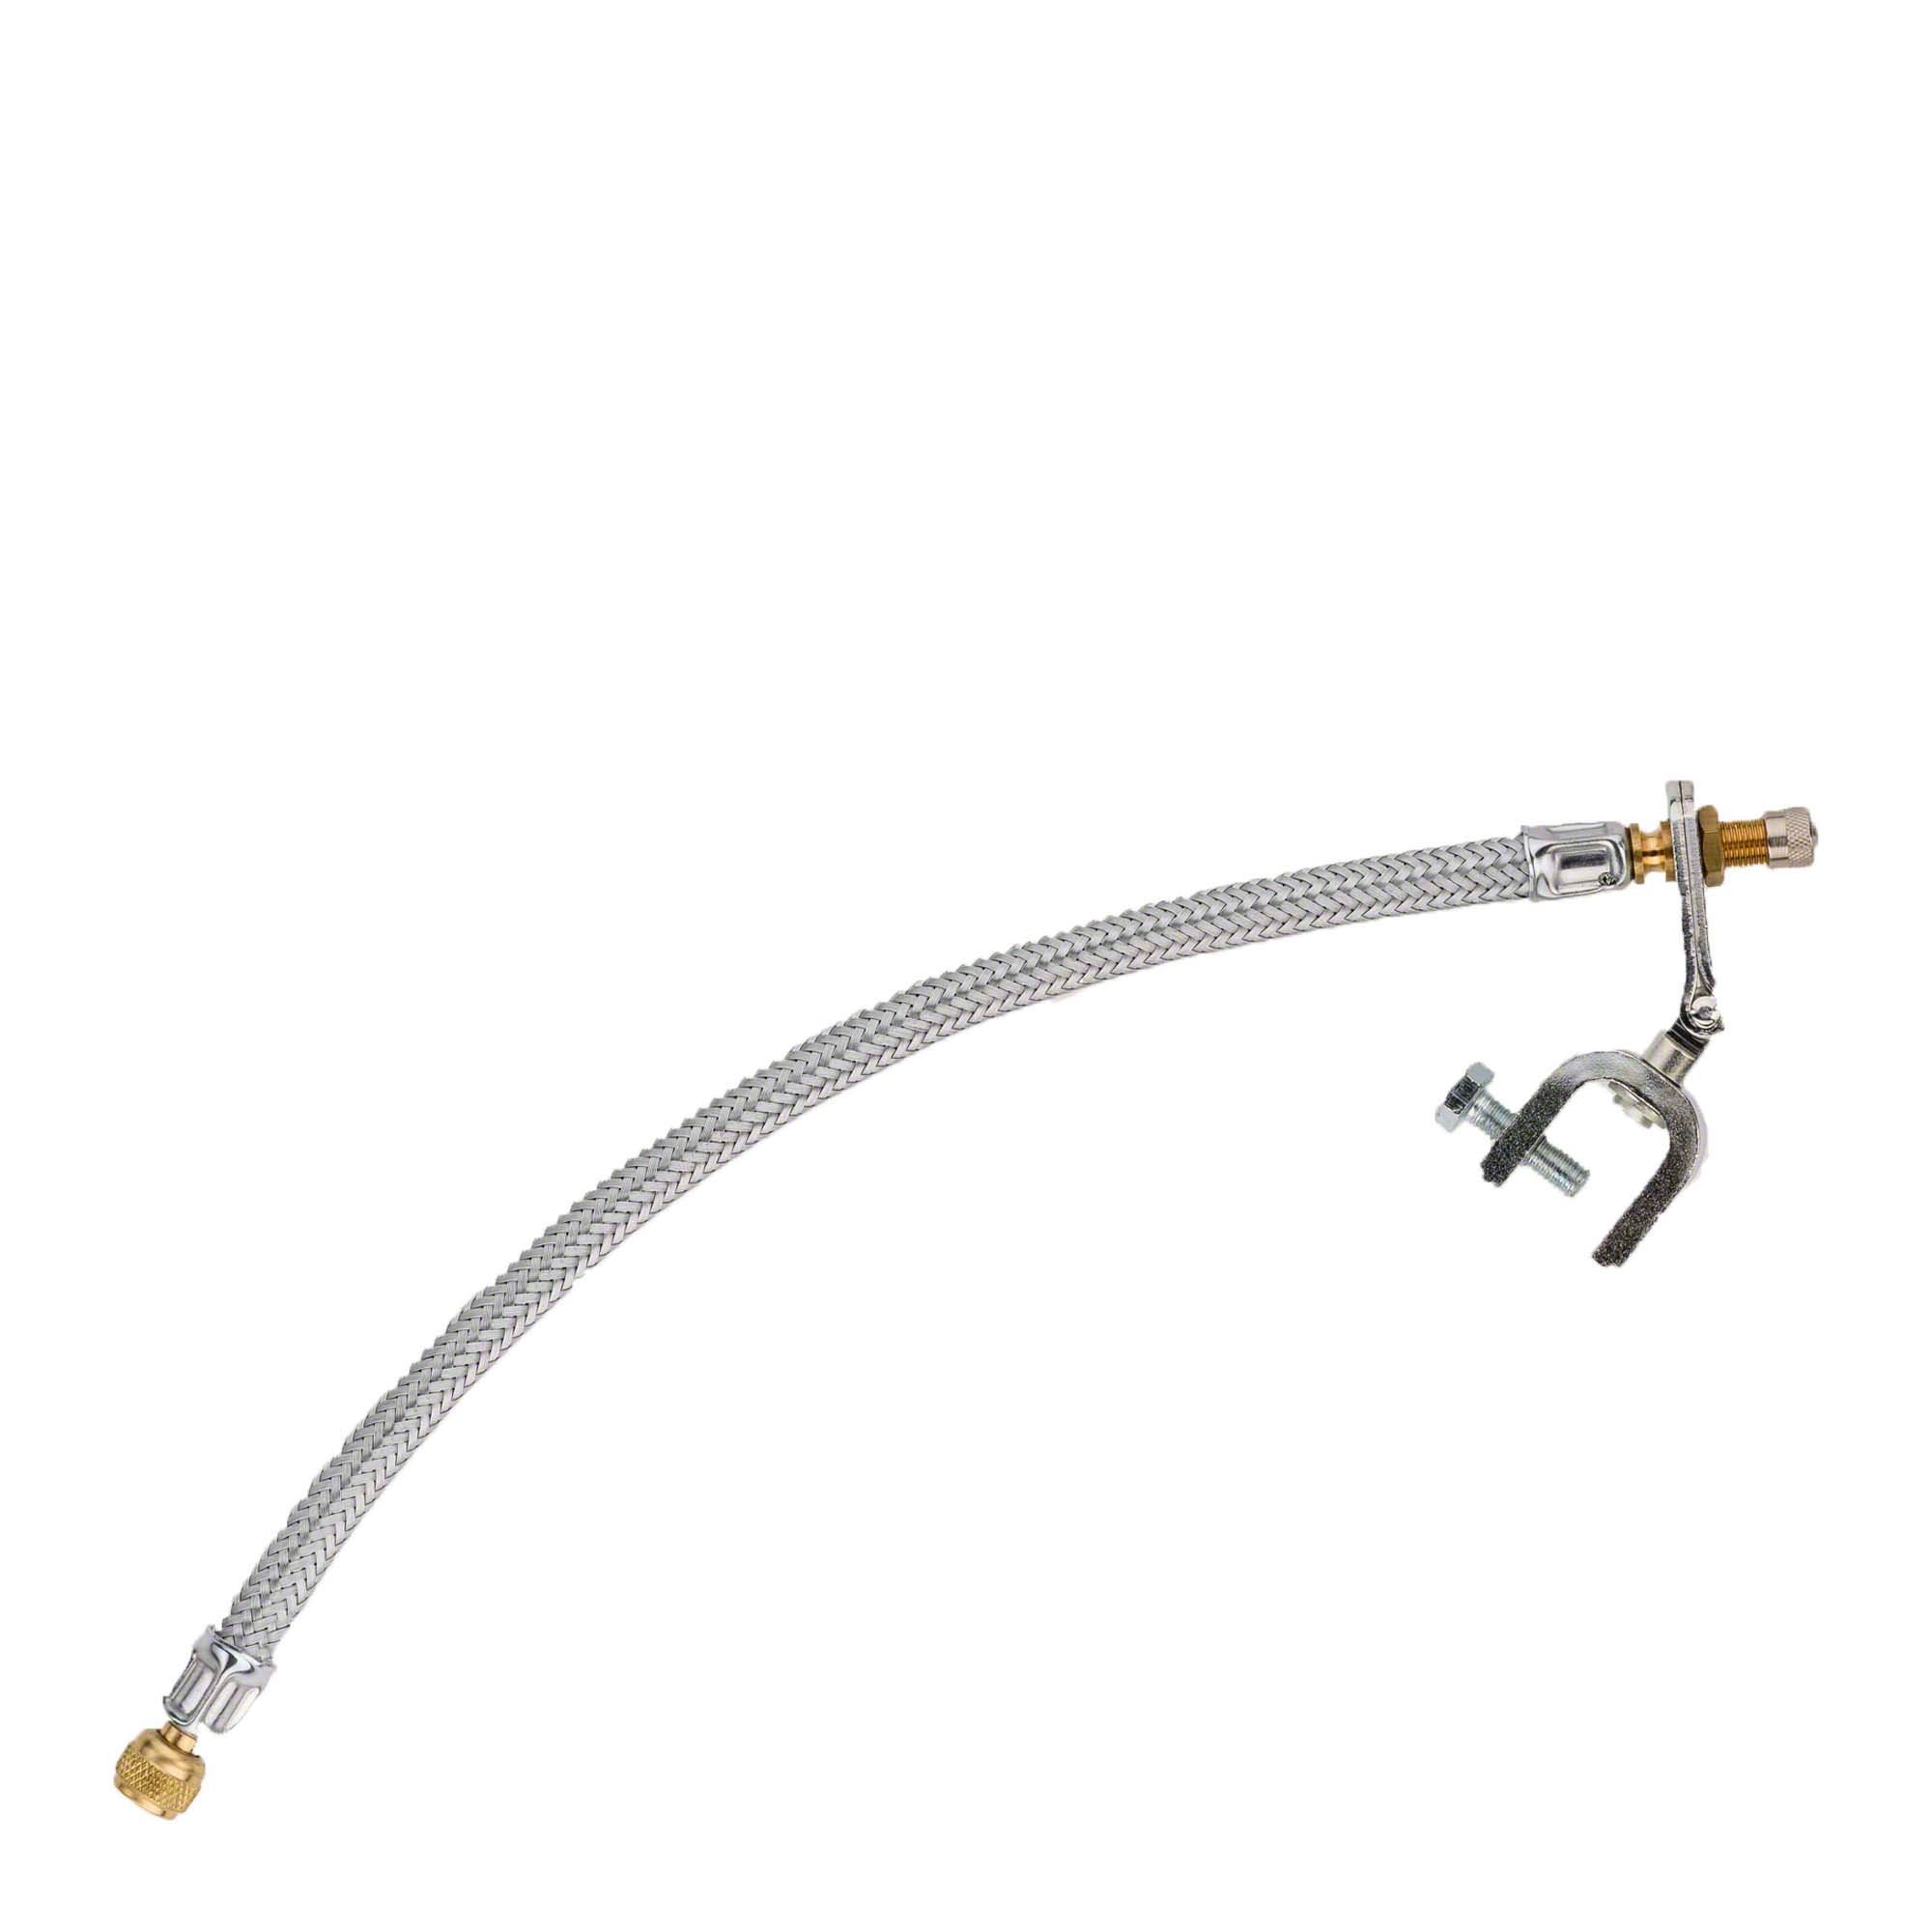 Estensione della valvola - 294 mm, staffa di fissaggio dello snodo